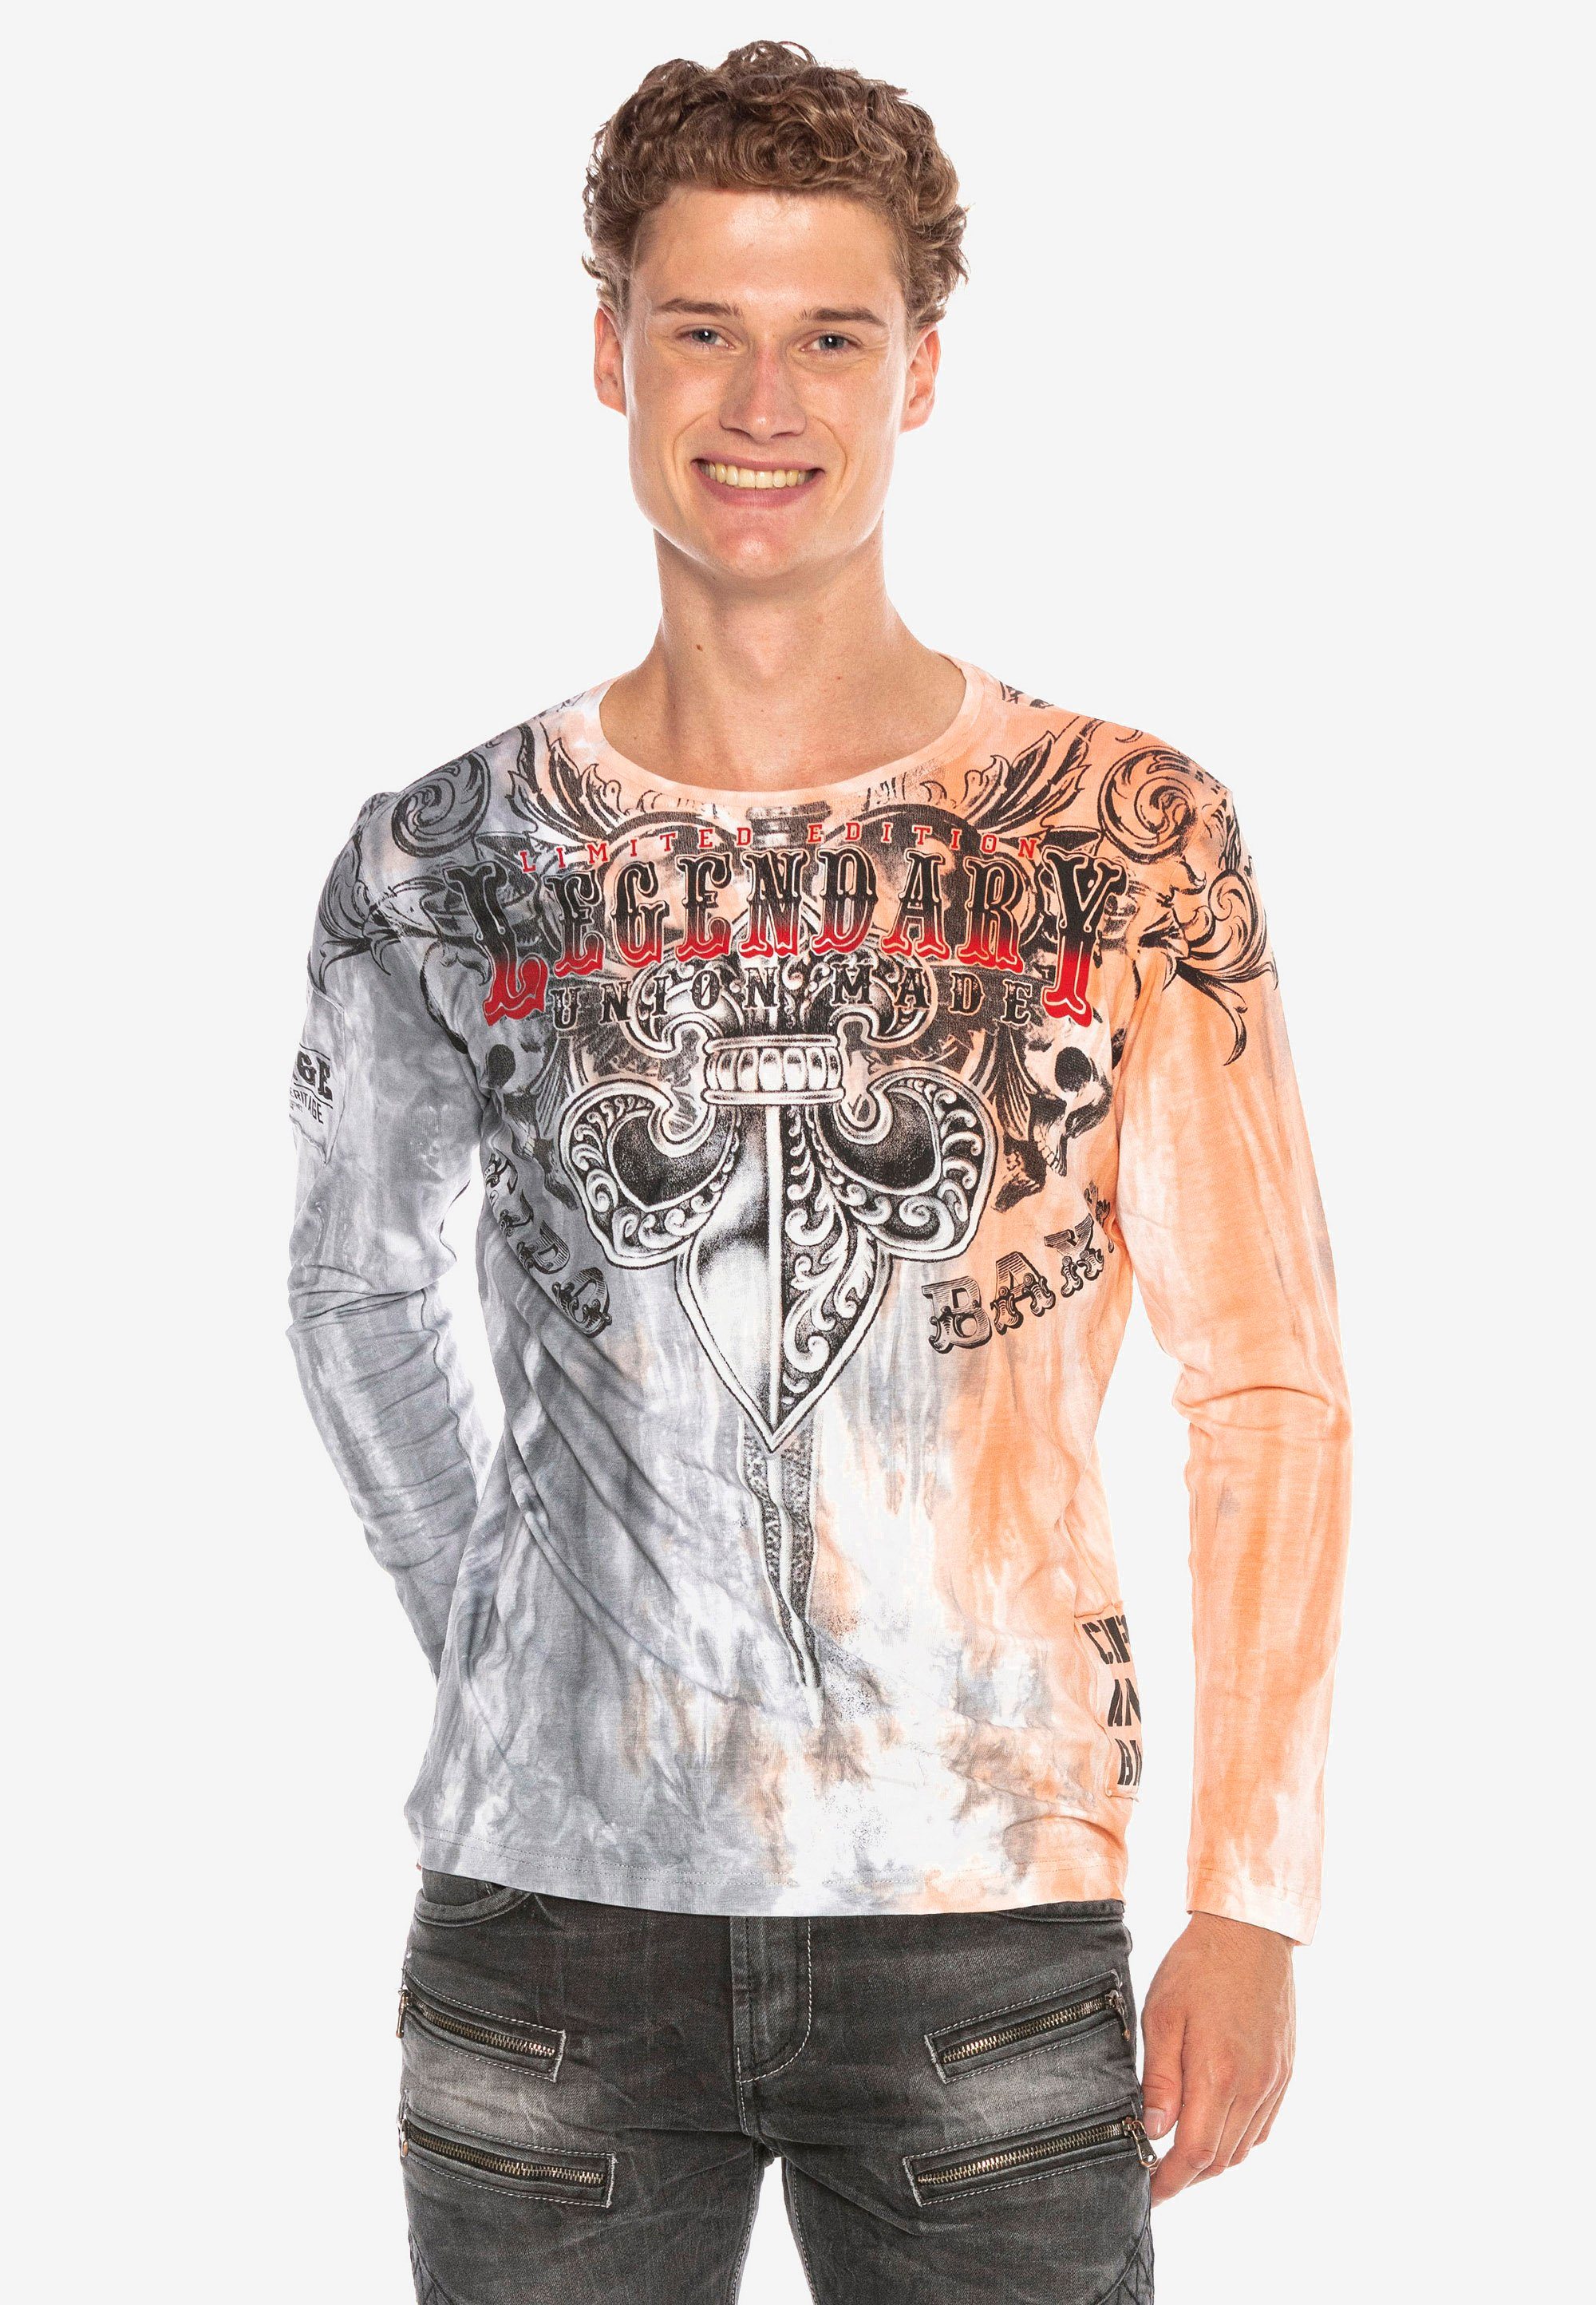 Langarmshirt mit Cipo weiß-grau Print & extravagantem Baxx